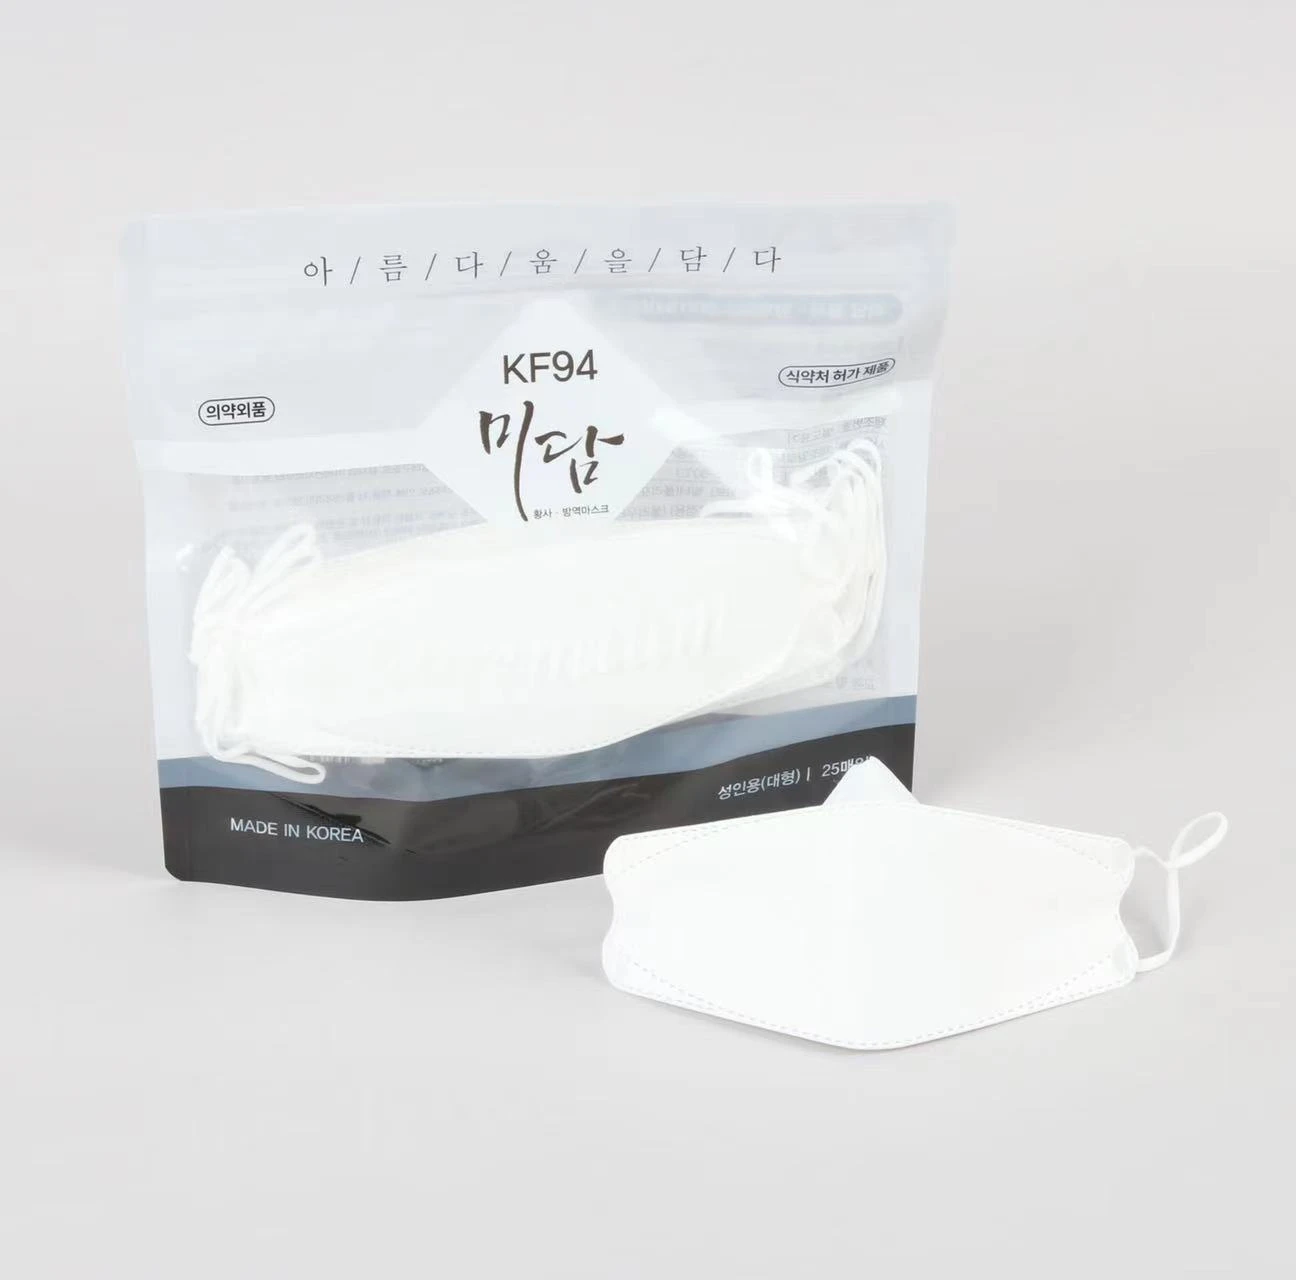 KF94 防雾霾 防疫口罩  FDA认证 (N95 同级)  高品质 舒适透气 白色 韩国政府采购名单 3D设计4层过滤  密封袋装 高性价比 【一般贸易正规进口】【国内发货】